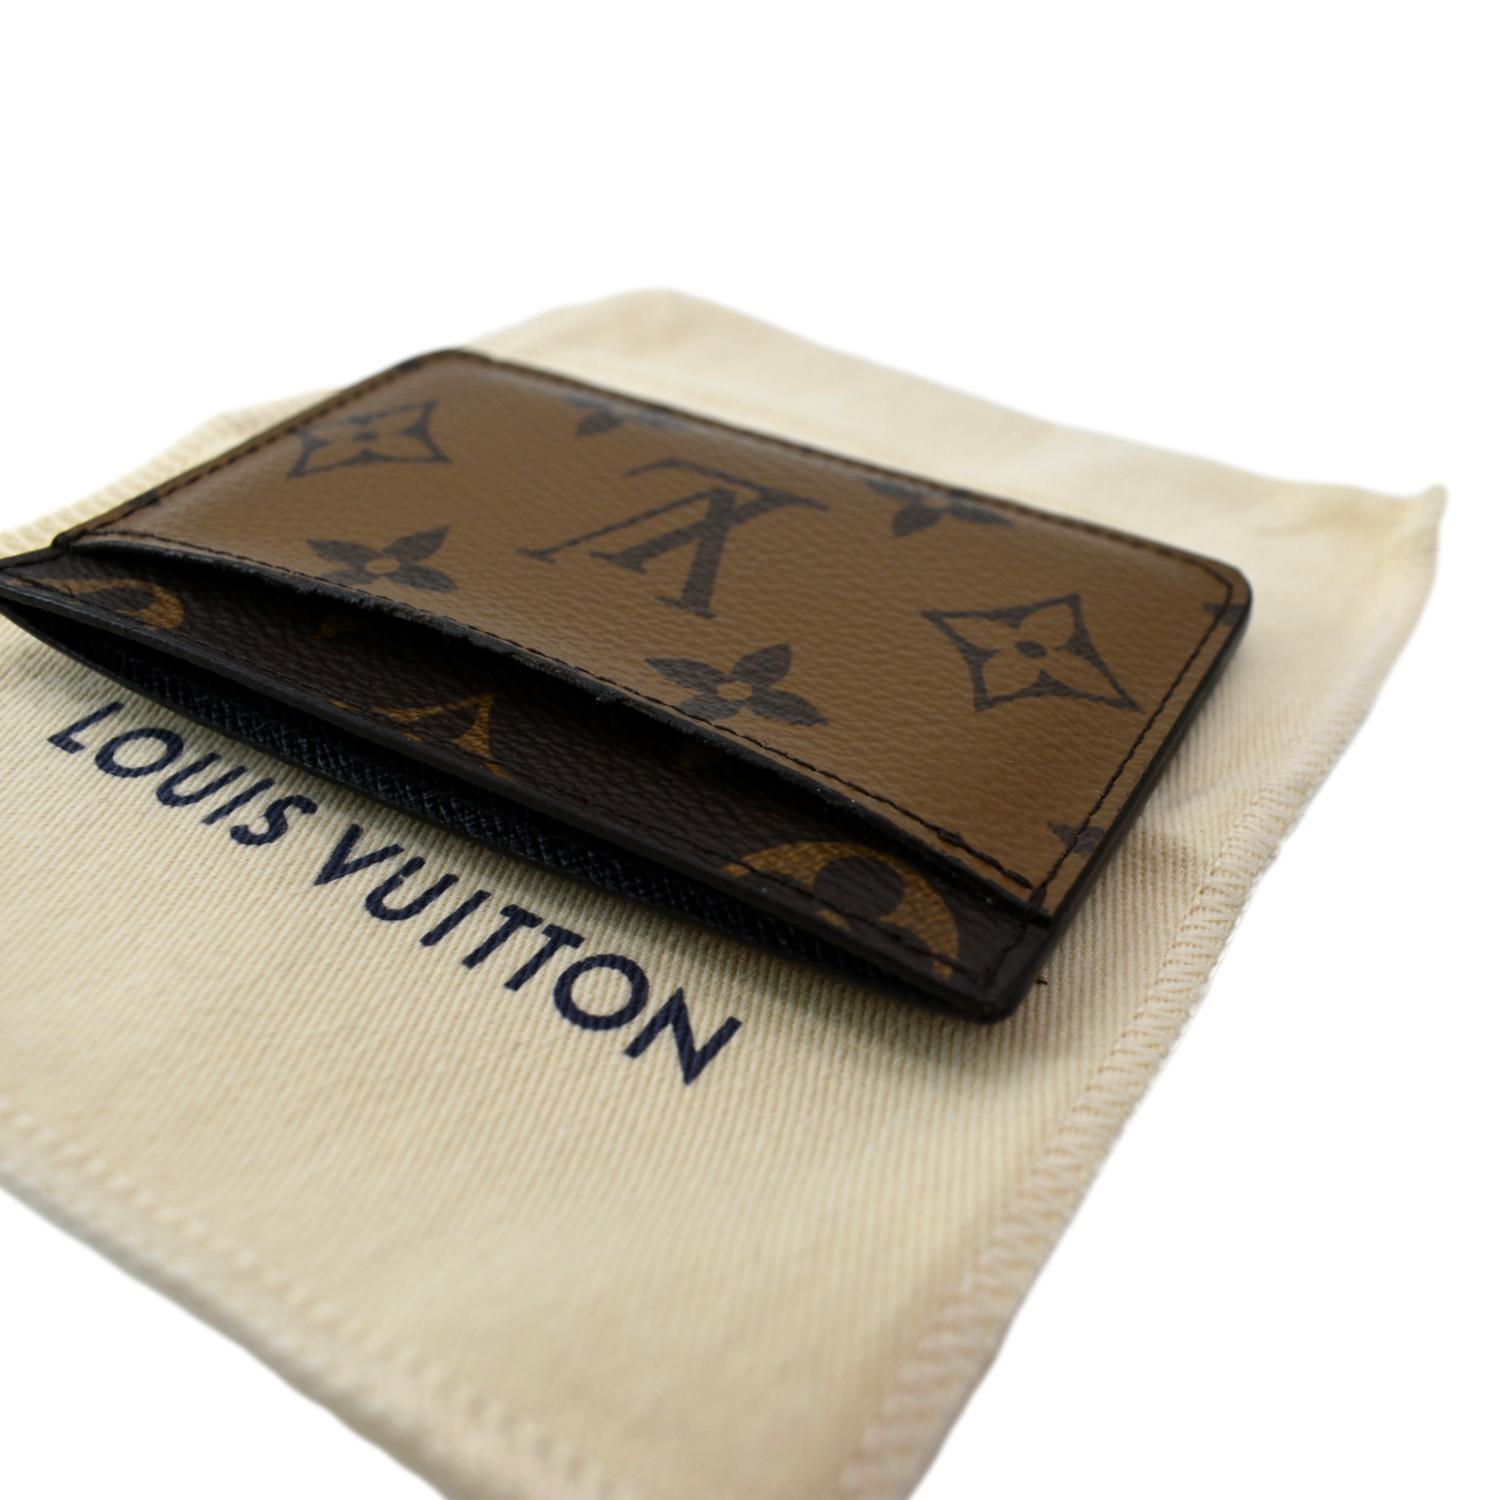 Louis Vuitton Monogram Ludlow Card Holder – DAC